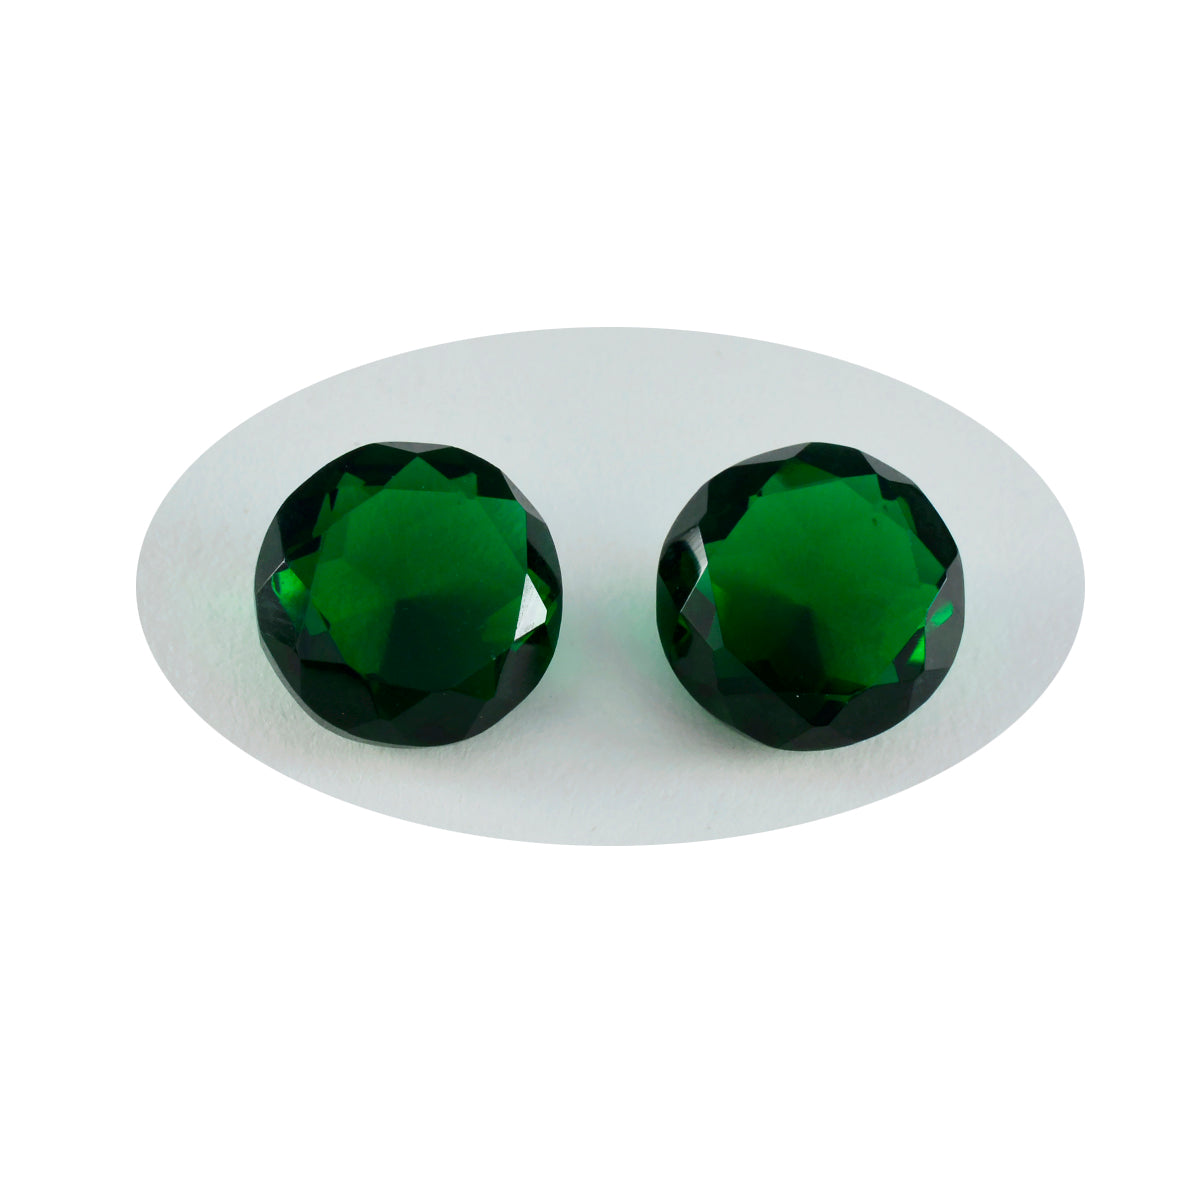 riyogems 1шт зеленый изумруд граненый cz 13x13 мм круглая форма драгоценные камни хорошего качества